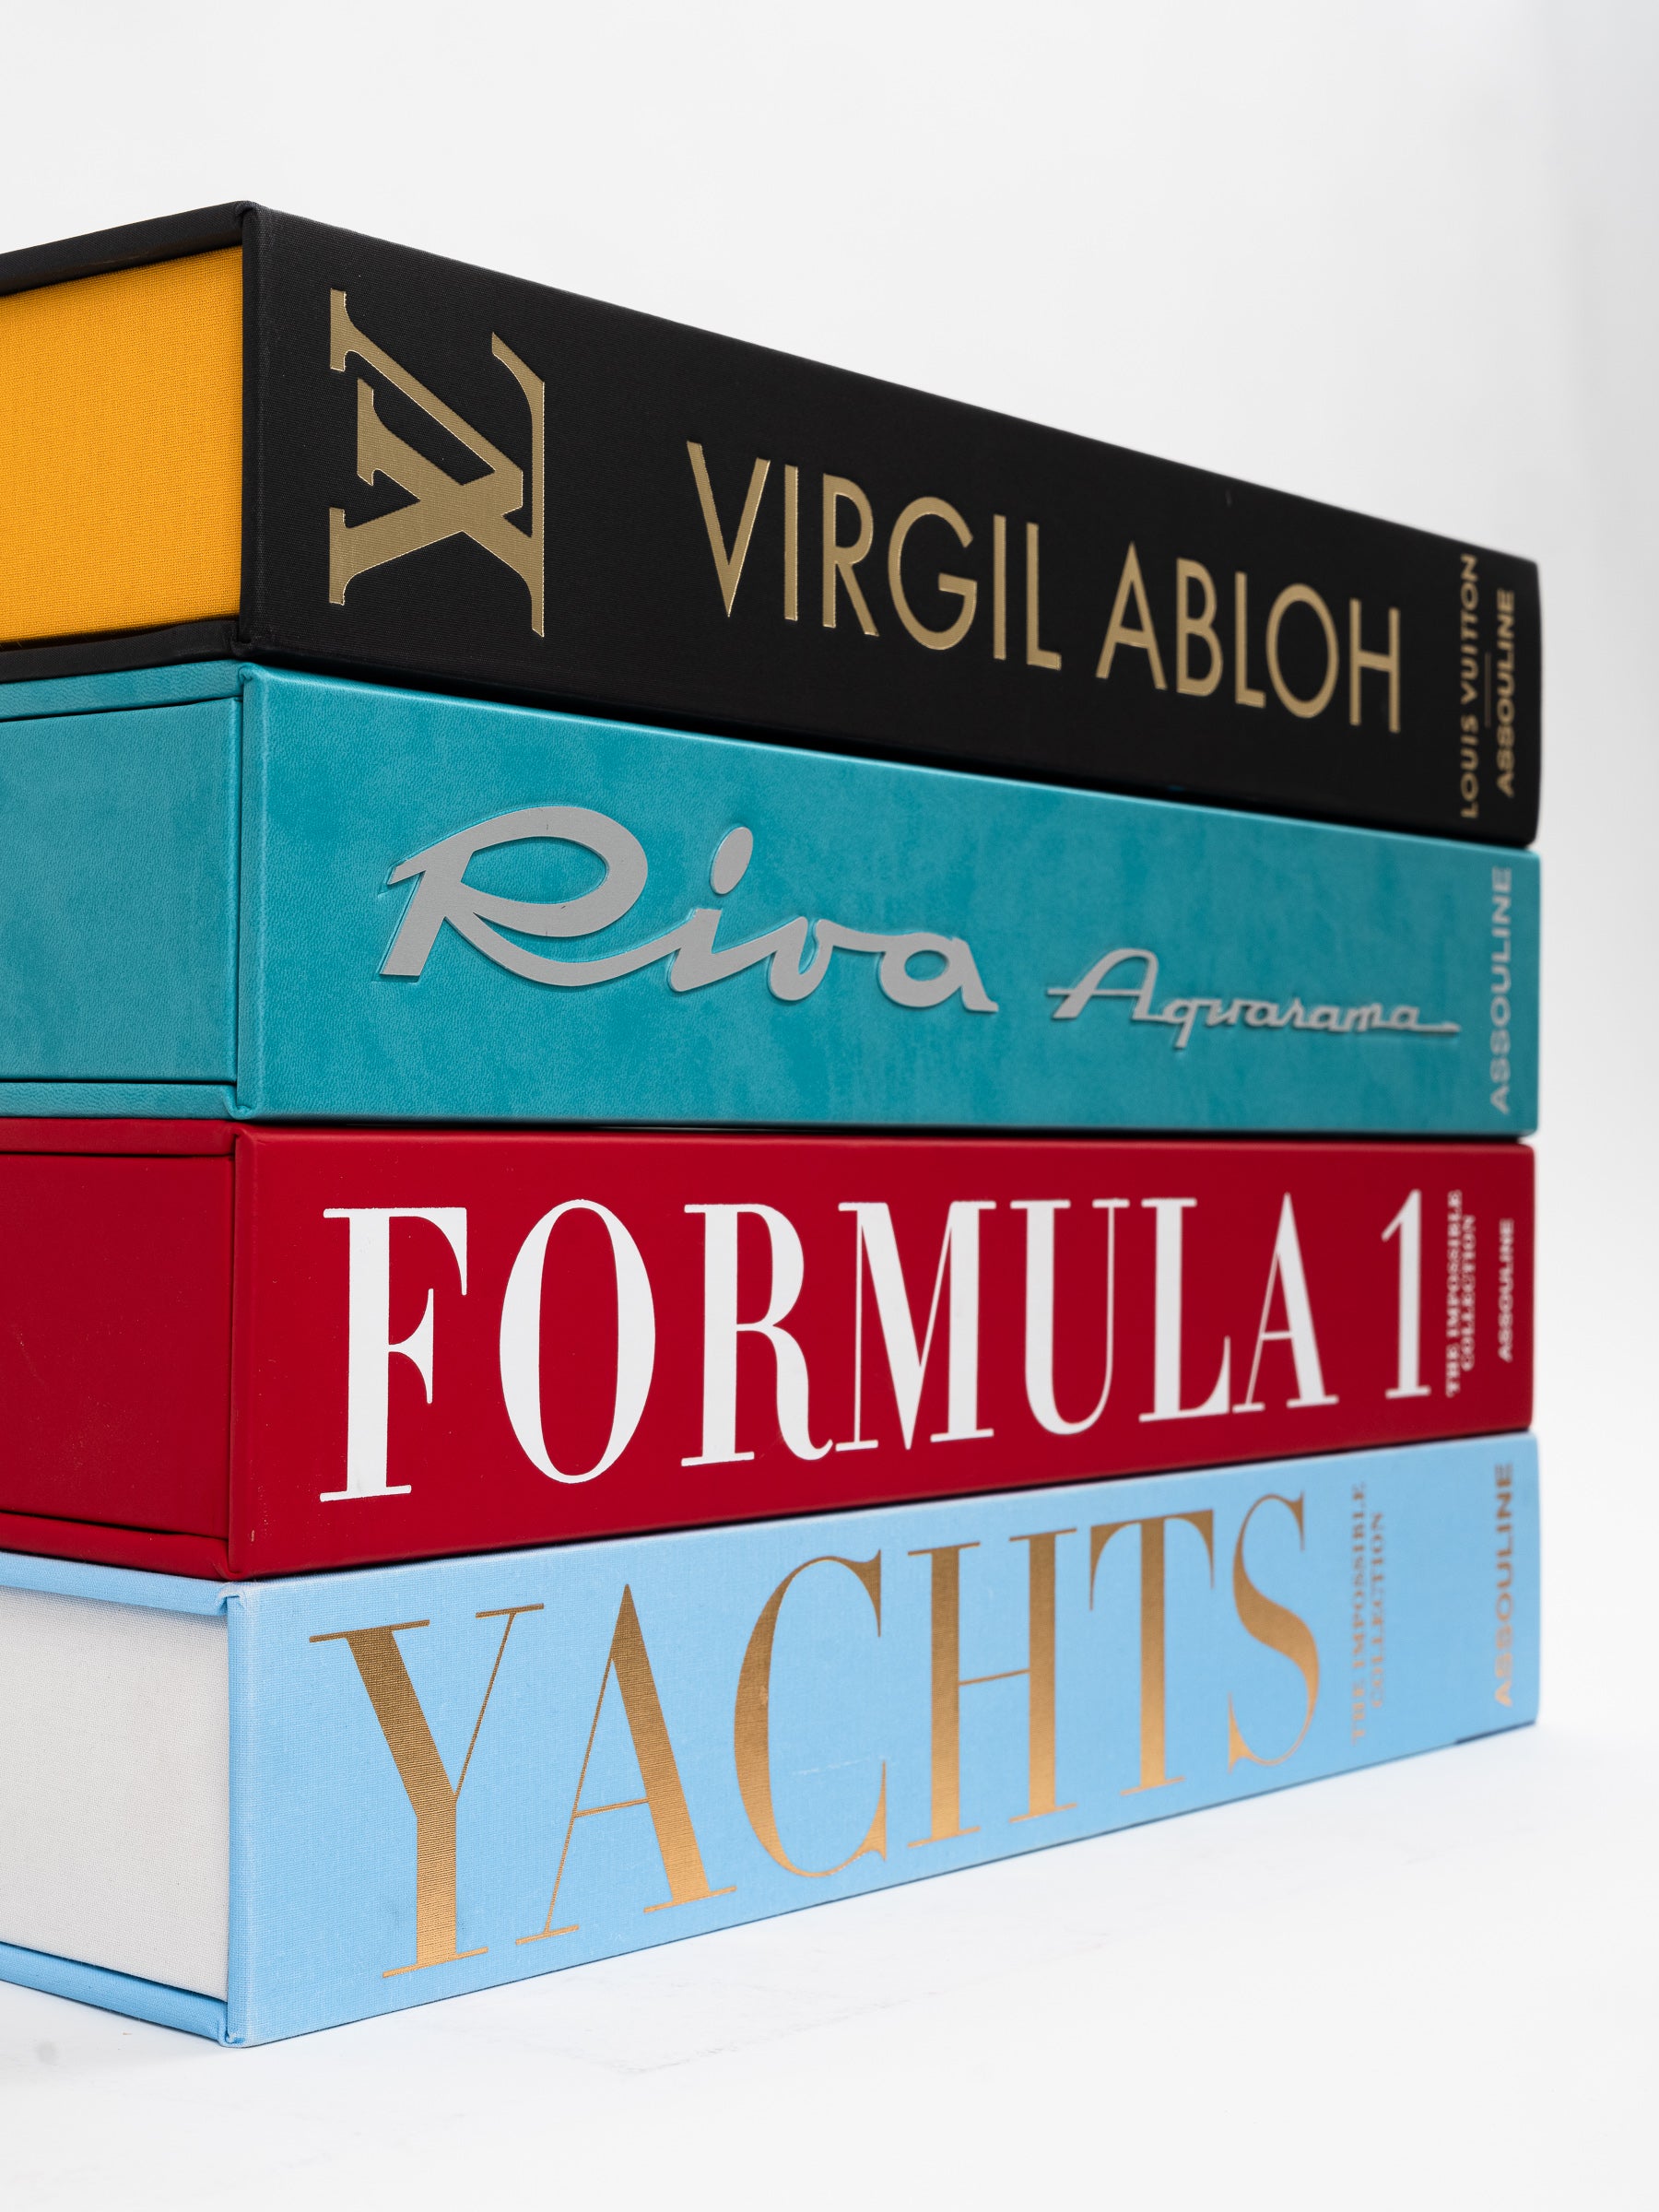 Louis Vuitton, Art, Collectibles Coffee Table Books The Louis Vuitton  Travel Book Collection